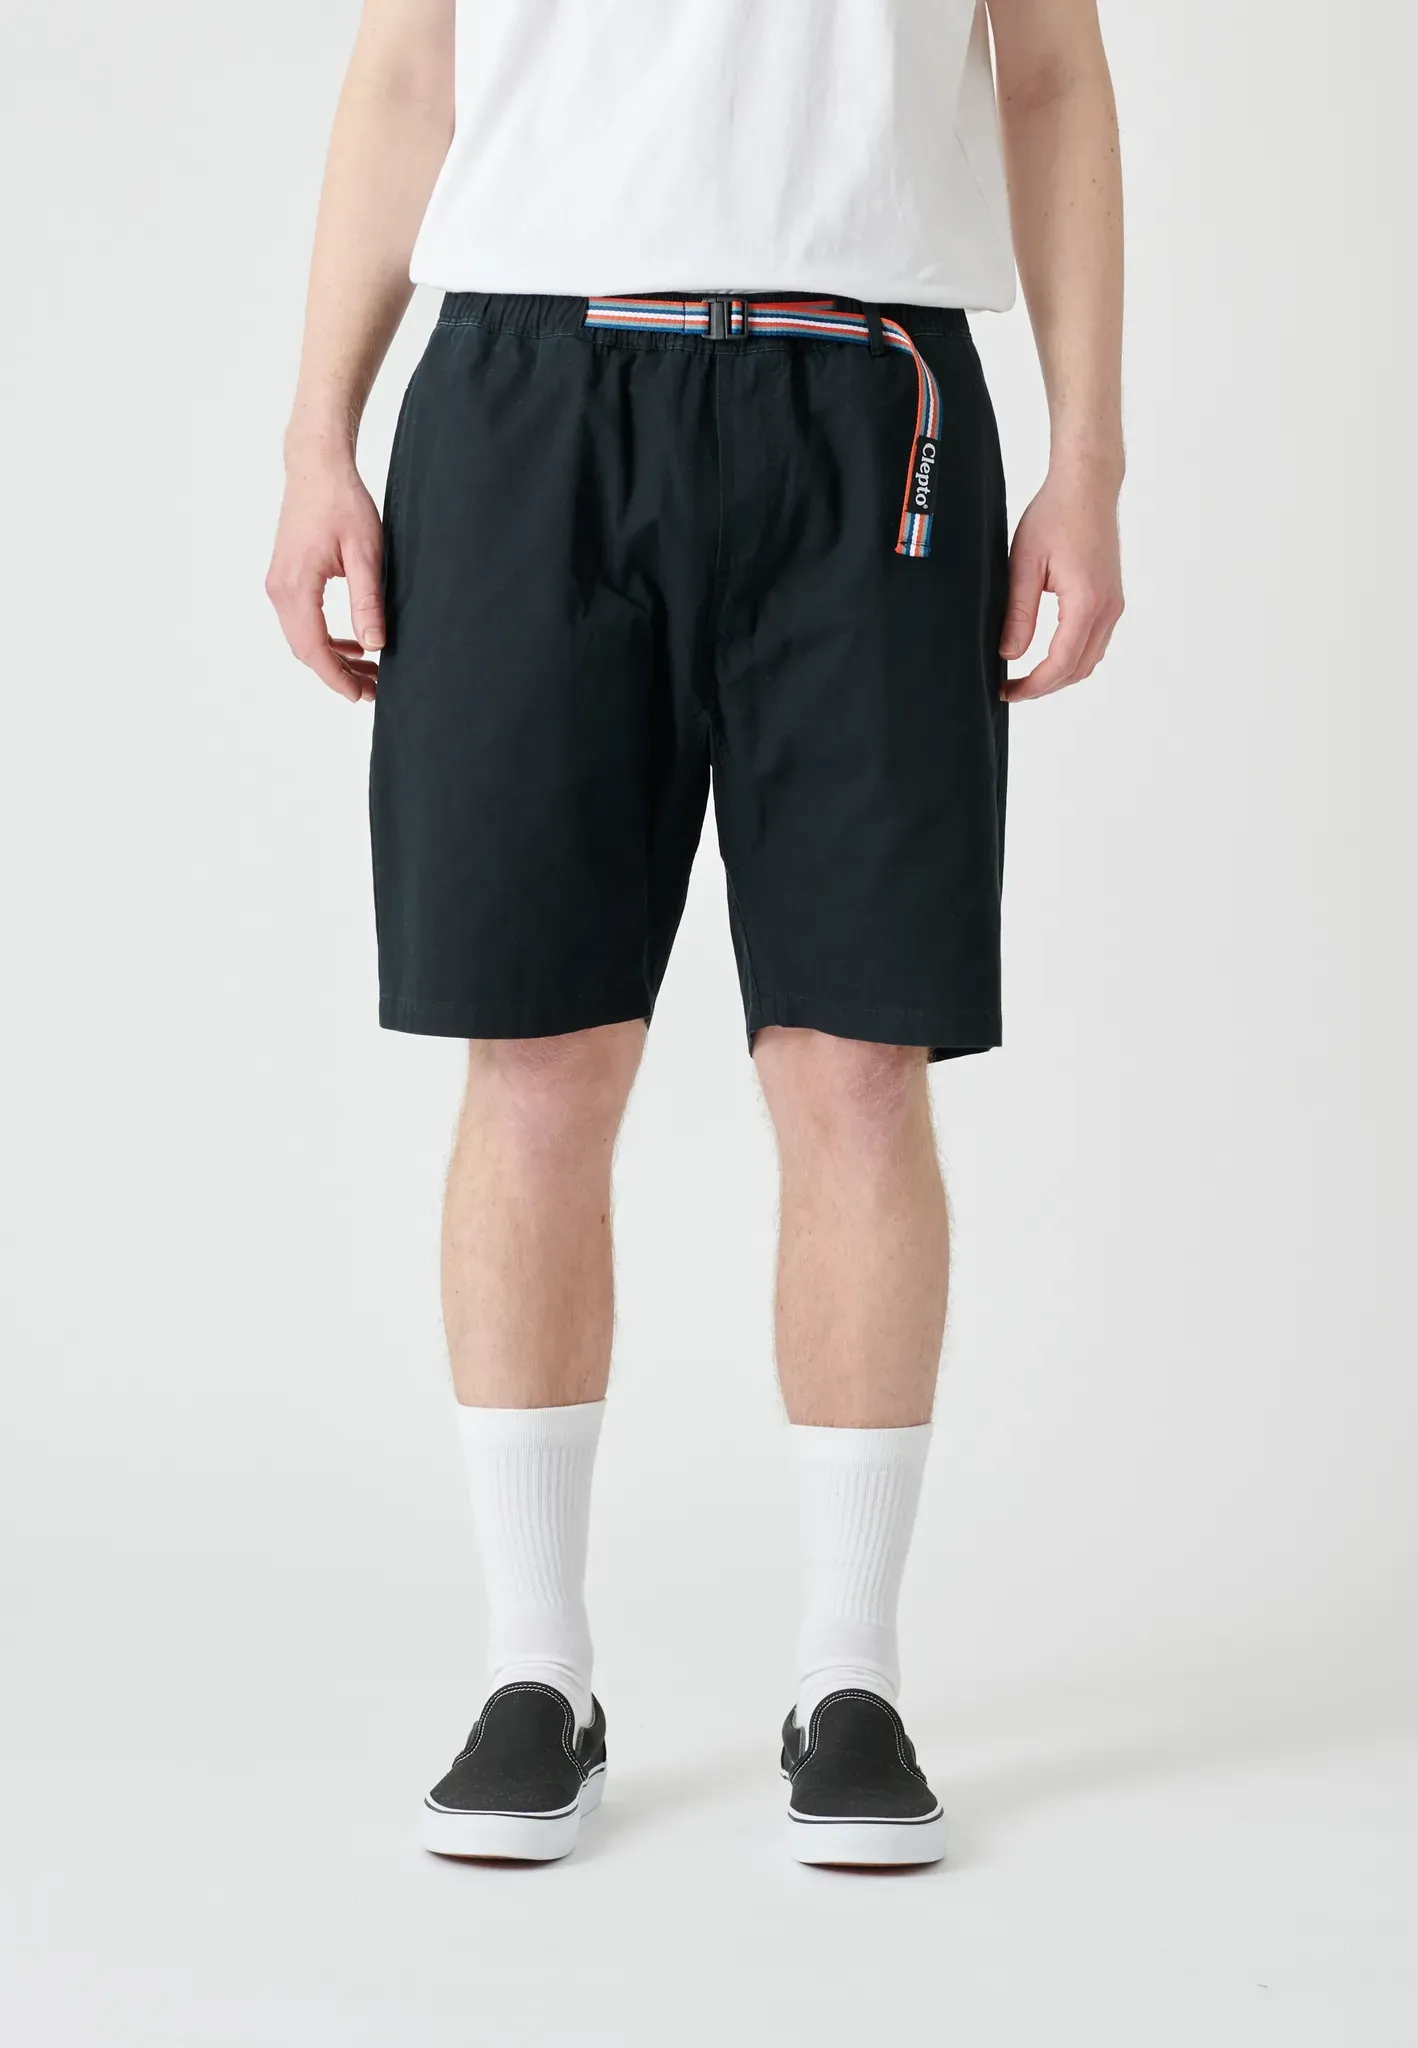 Shorts CLEPTOMANICX "Transit Team Shorts" Gr. L, EURO-Größen, schwarz Herren Hosen Shorts aus Bio-Baumwolle